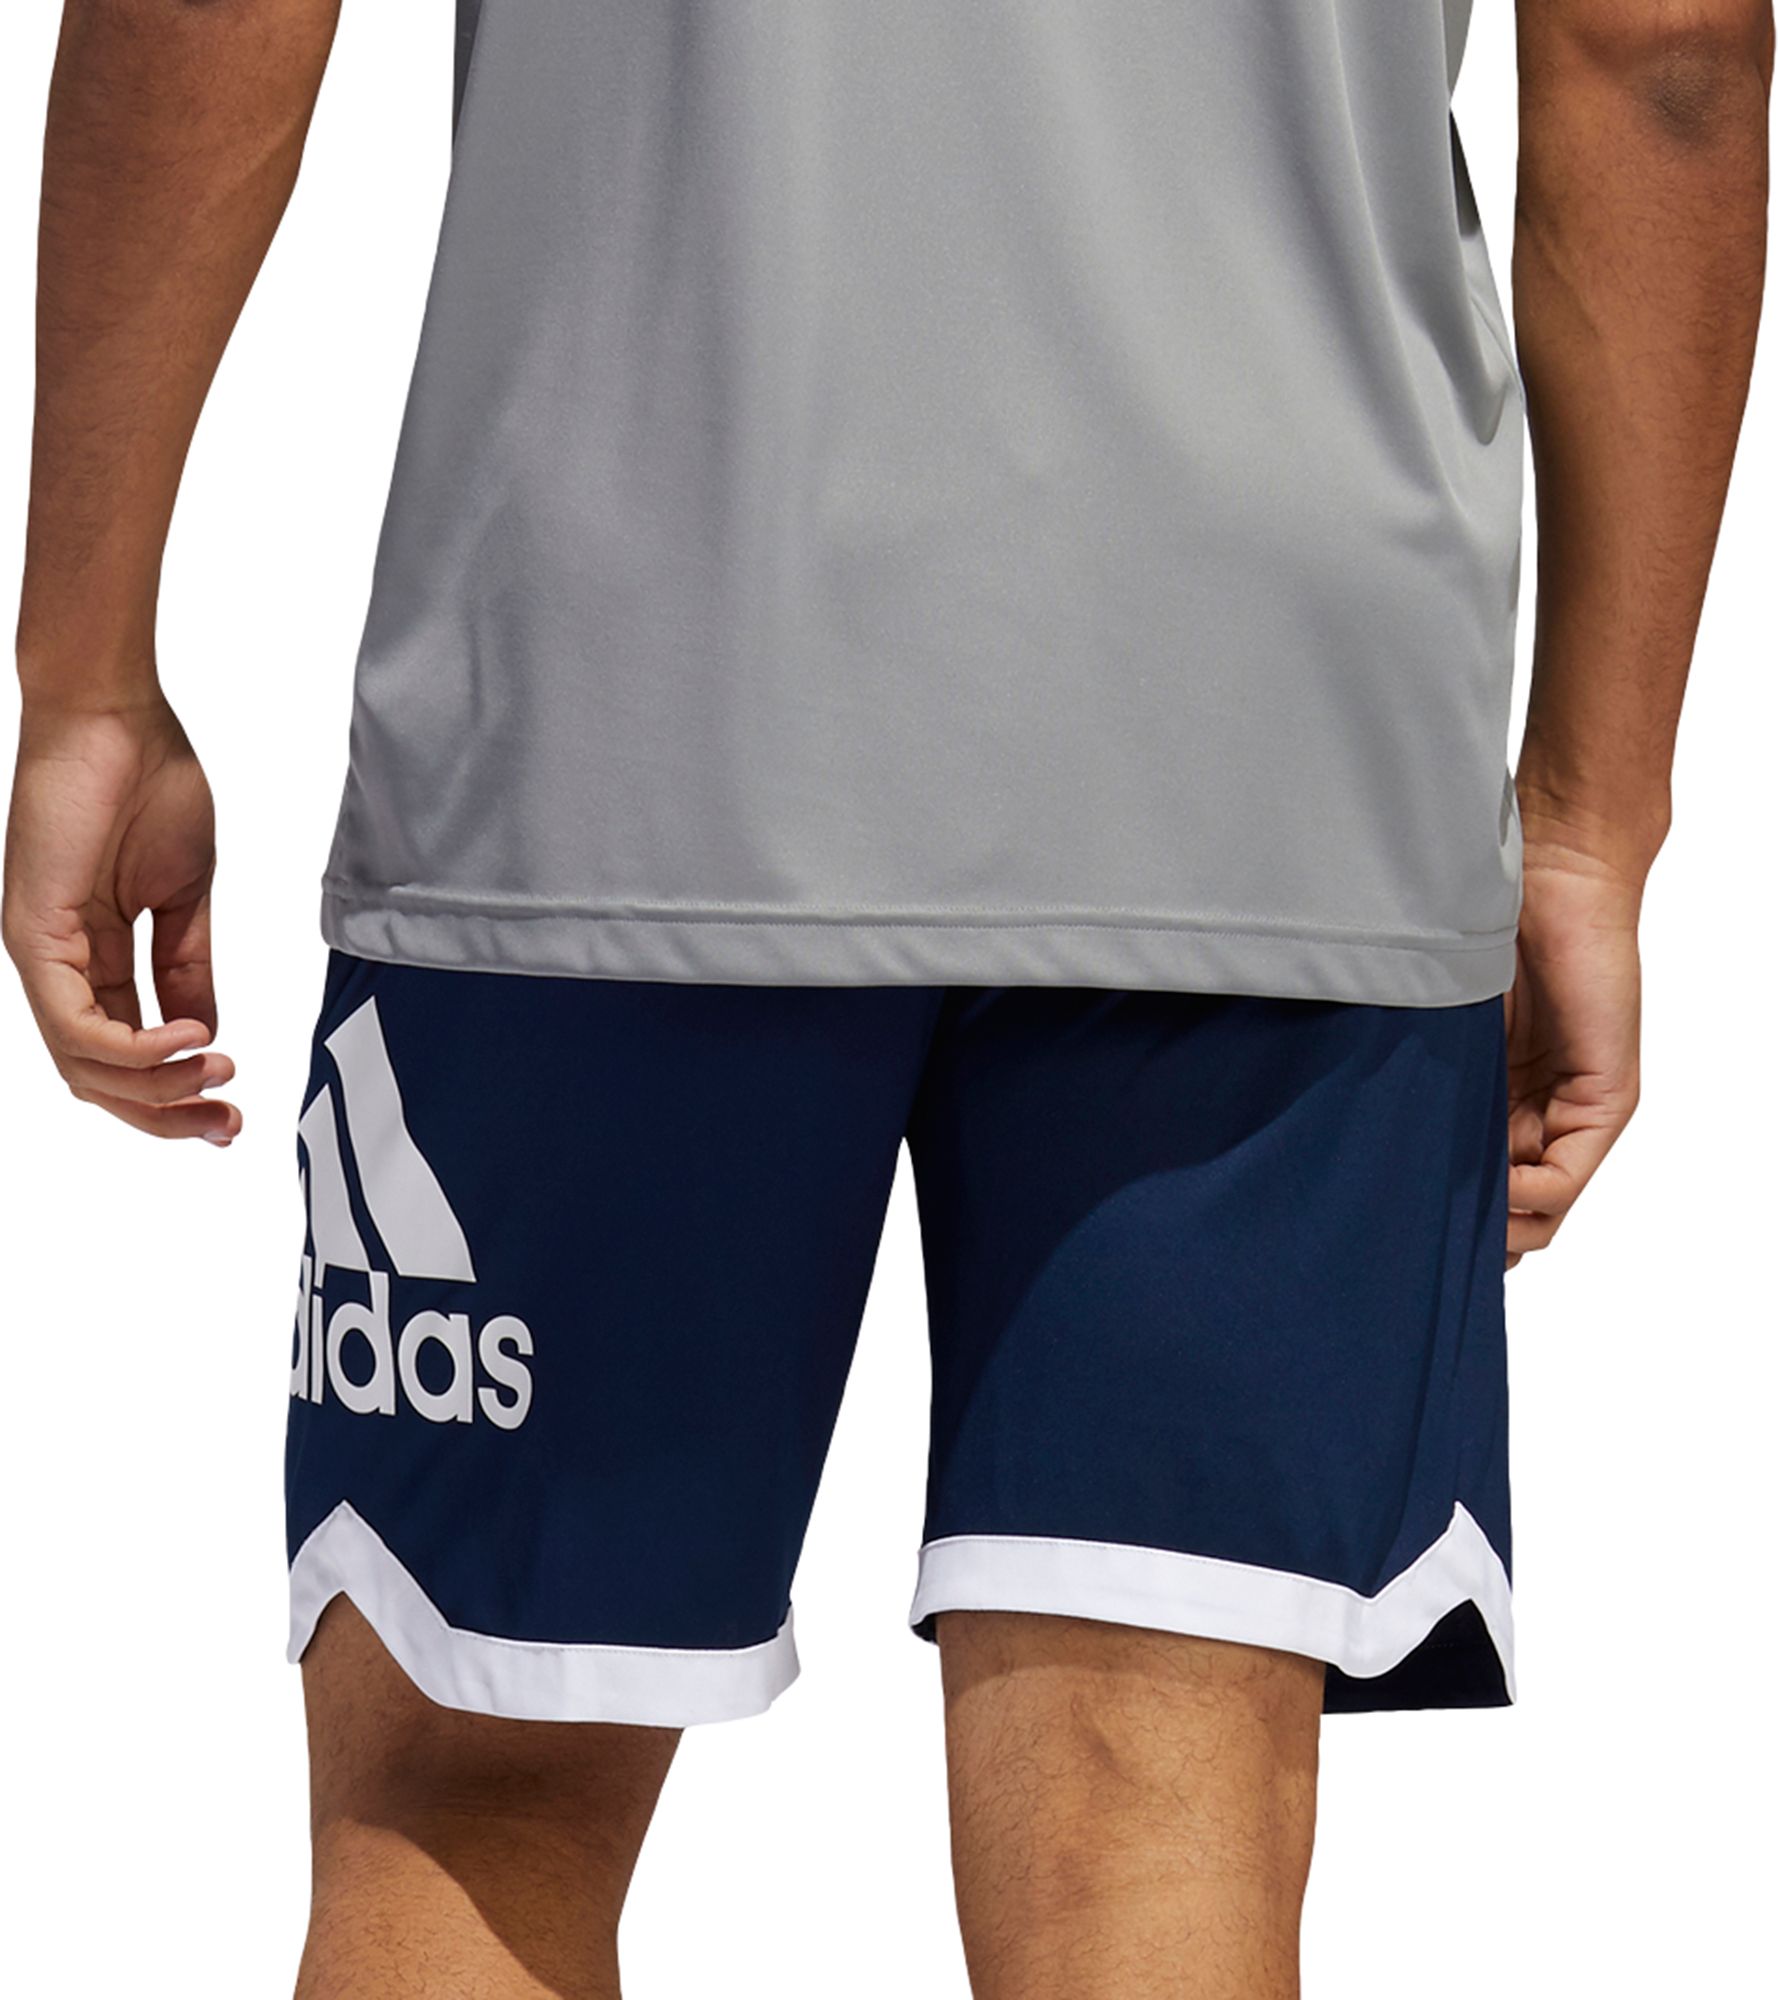 mens basketball shorts adidas